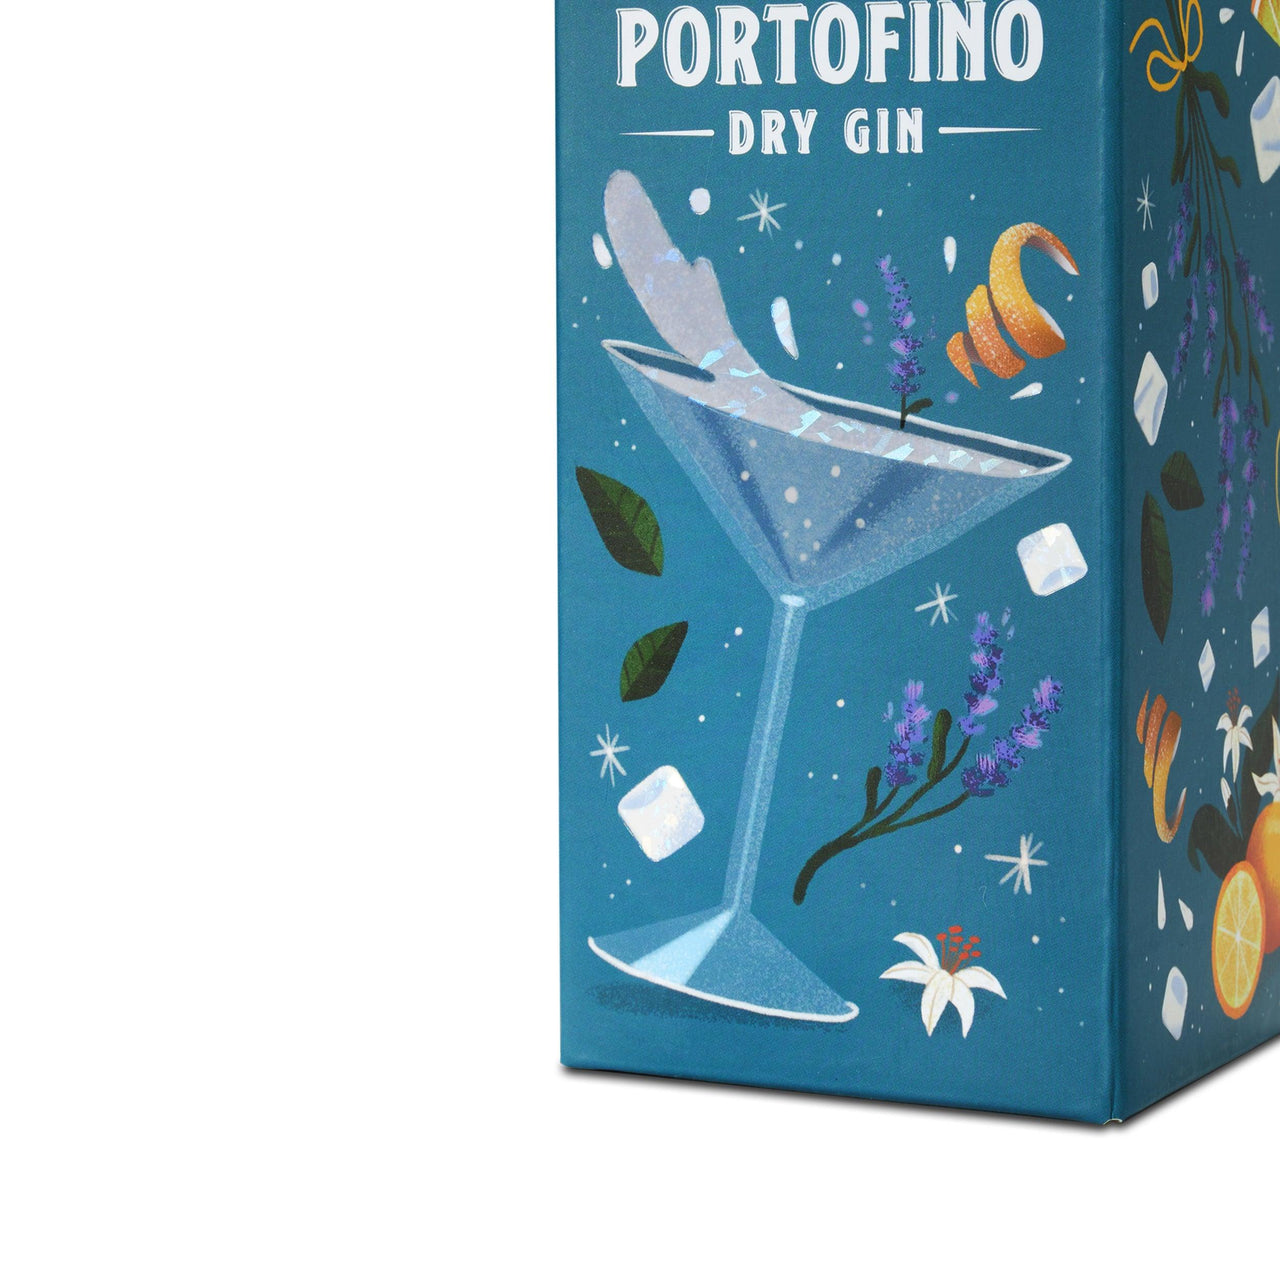 PORTOFINO DRY GIN 500 ml COCKTAIL LIMITED EDITION - Portofino Dry Gin